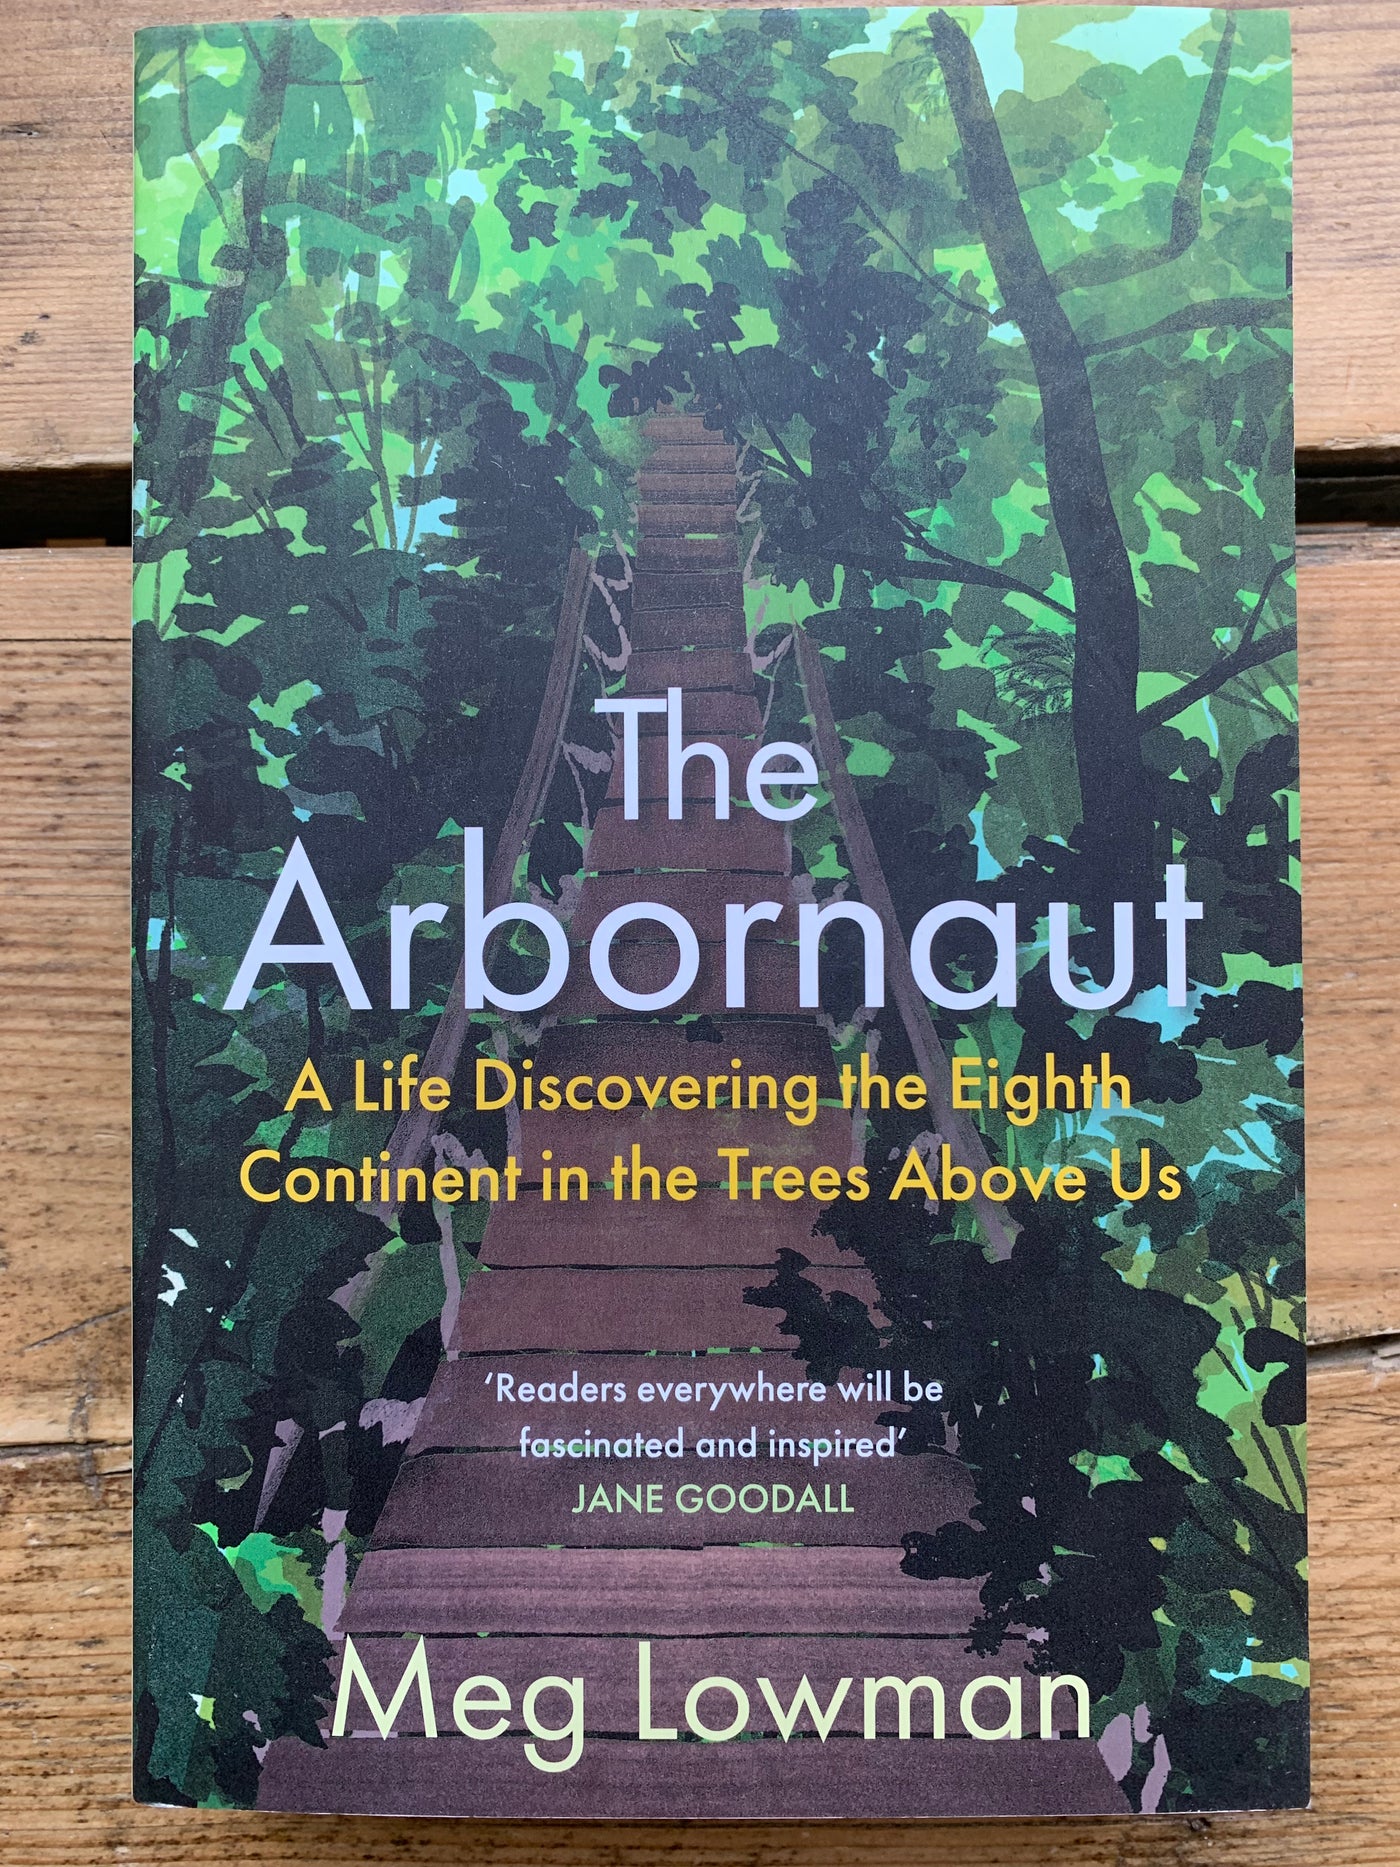 The Arbornaut